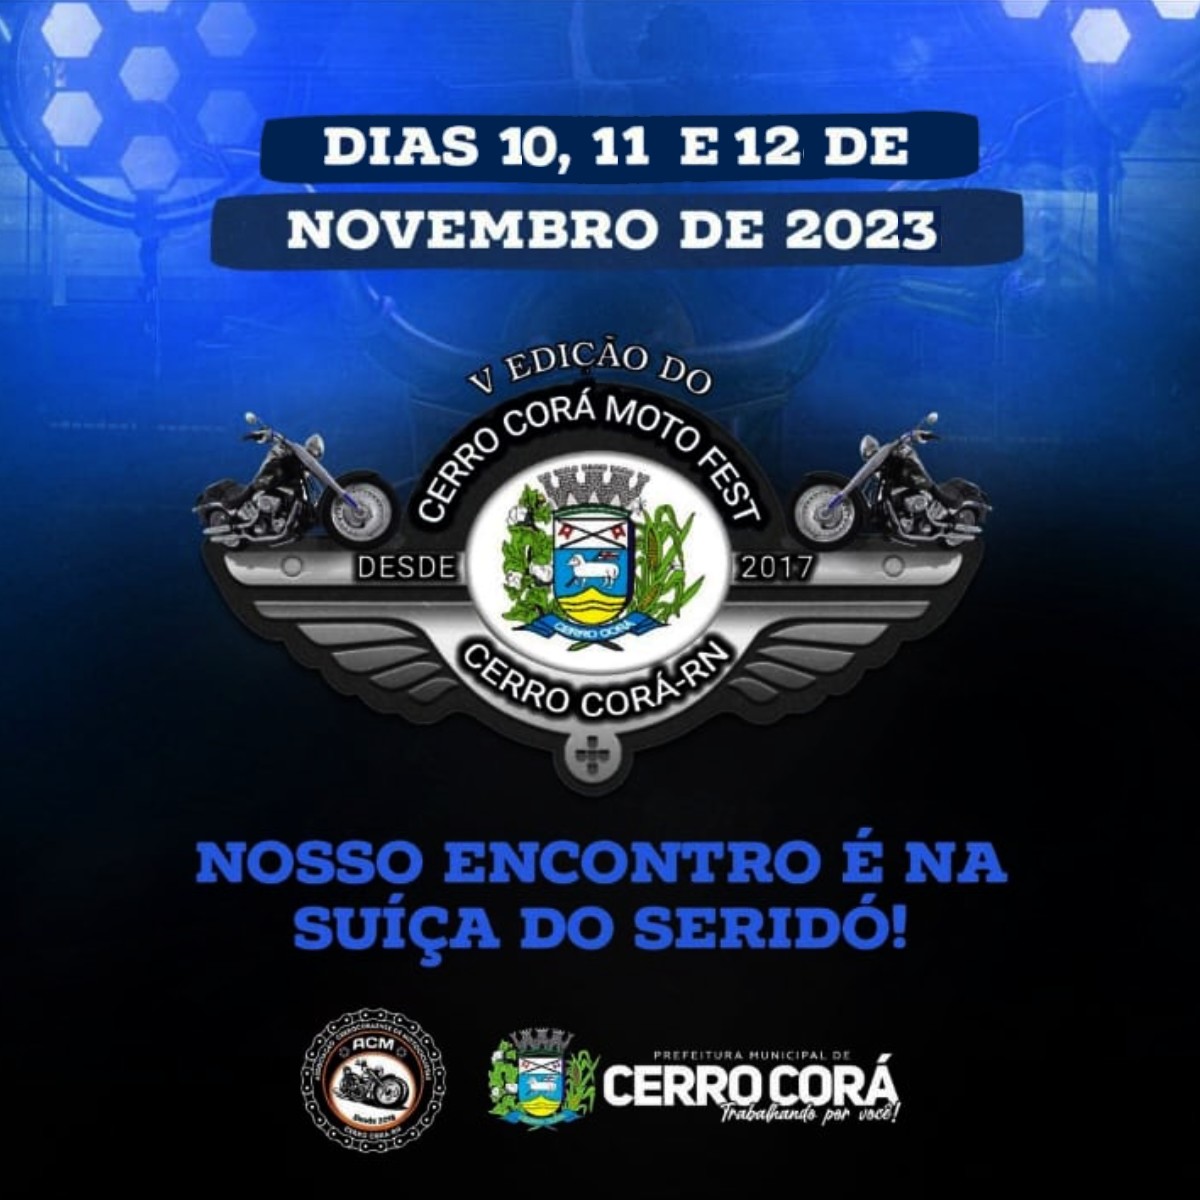 Próximo grande evento em Cerro Corá previsto para novembro Moto Fest,